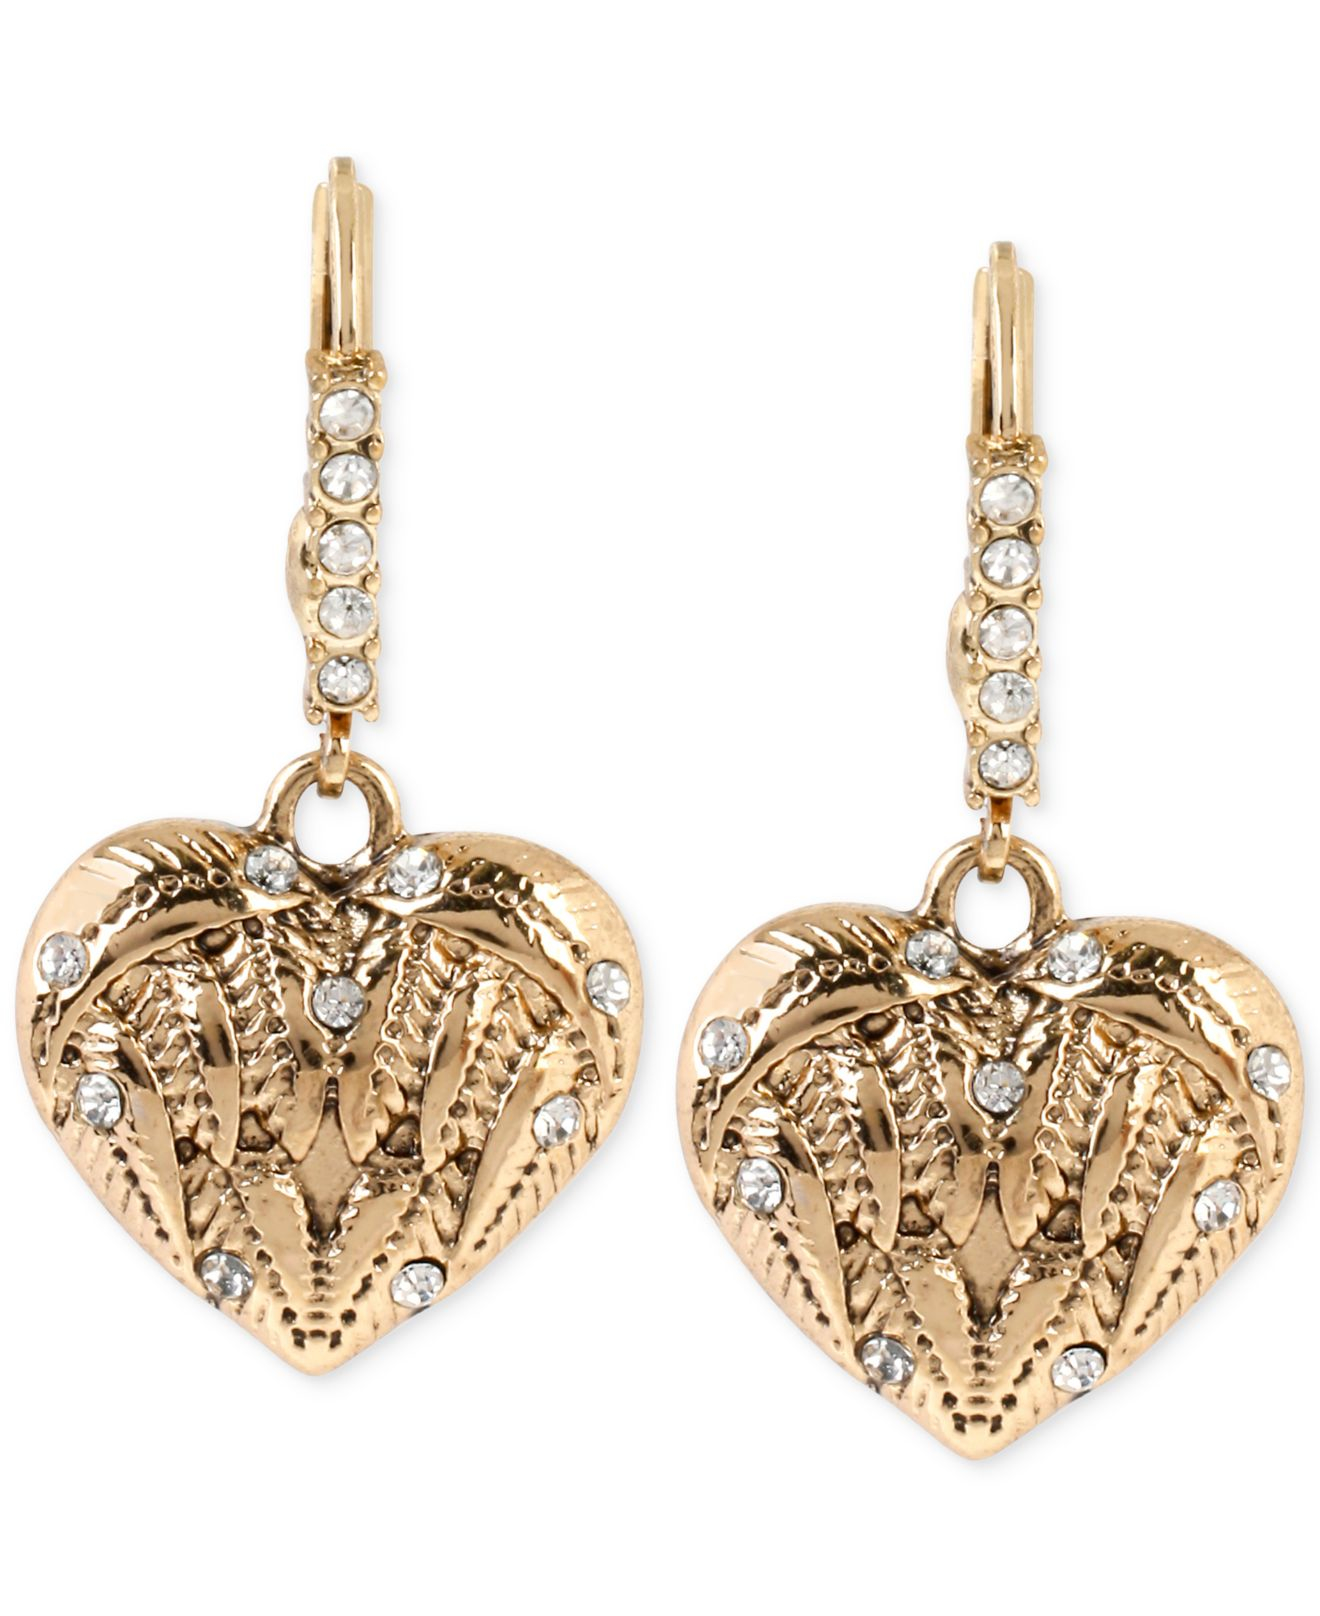 Lyst - Betsey johnson Gold-tone Crystal Enhanced Heart Drop Earrings in ...